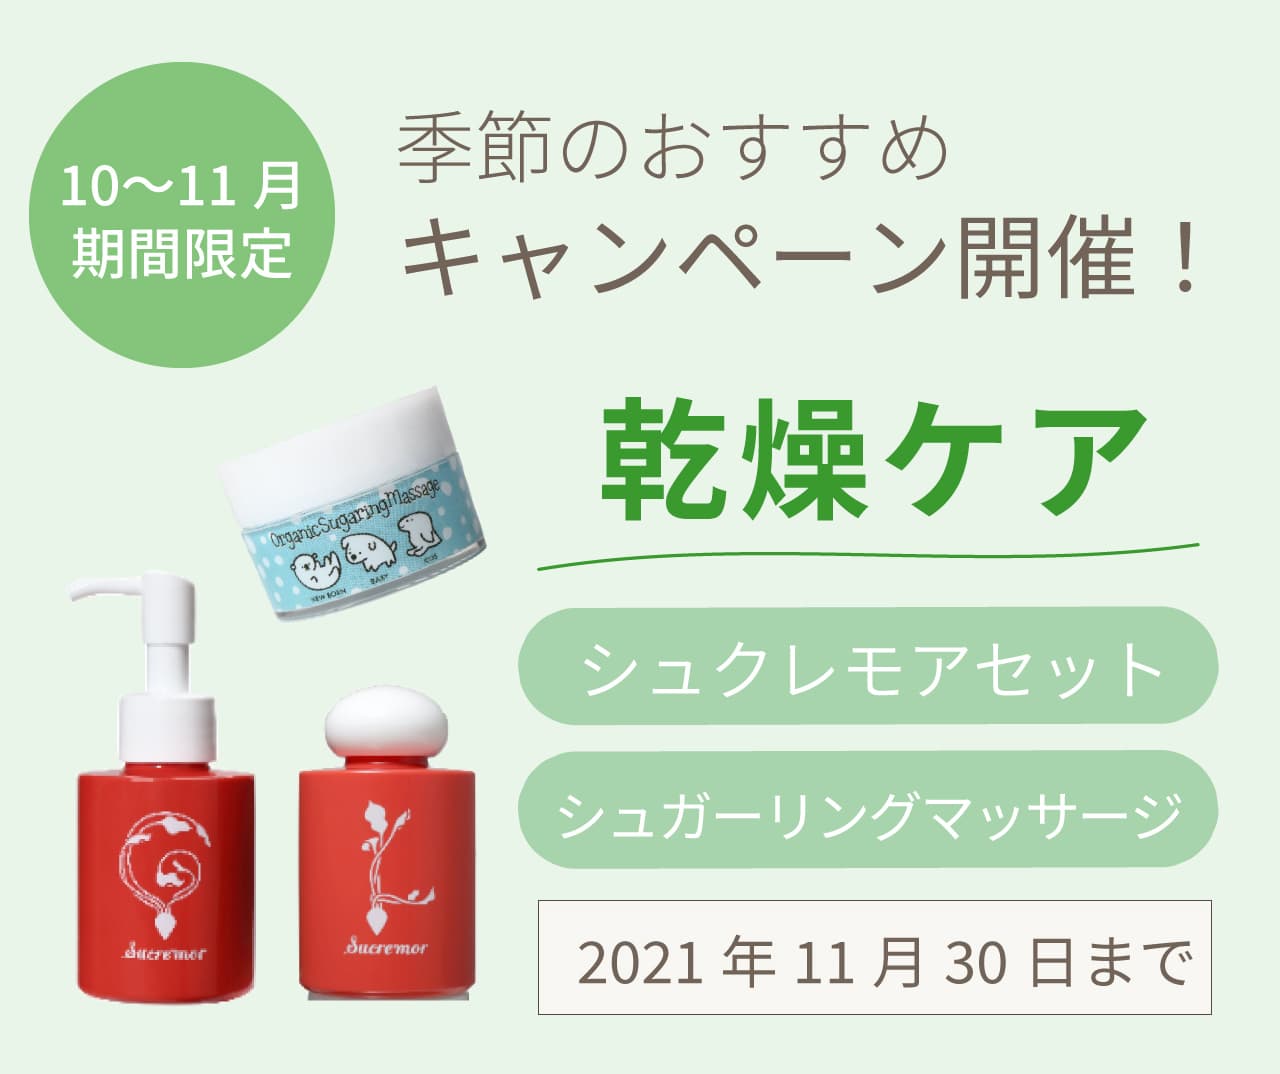 10〜11月 キャンペーン対象 商品一覧 ┇ アトピーの娘の為に開発した、日本初のシュガースクラブ